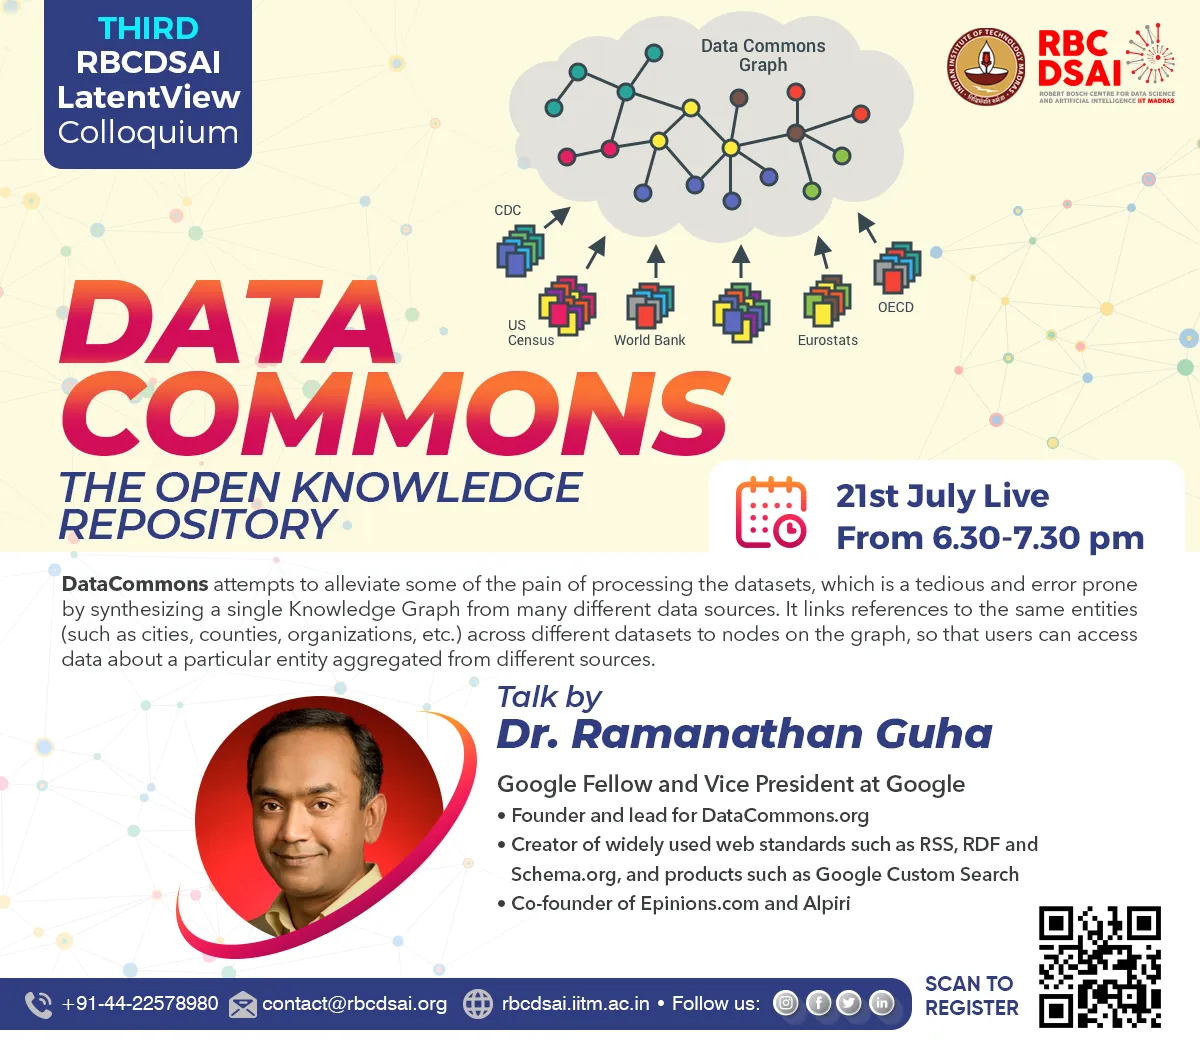 Third RBCDSAI LatentView Colloquium by Dr. Ramanathan Guha